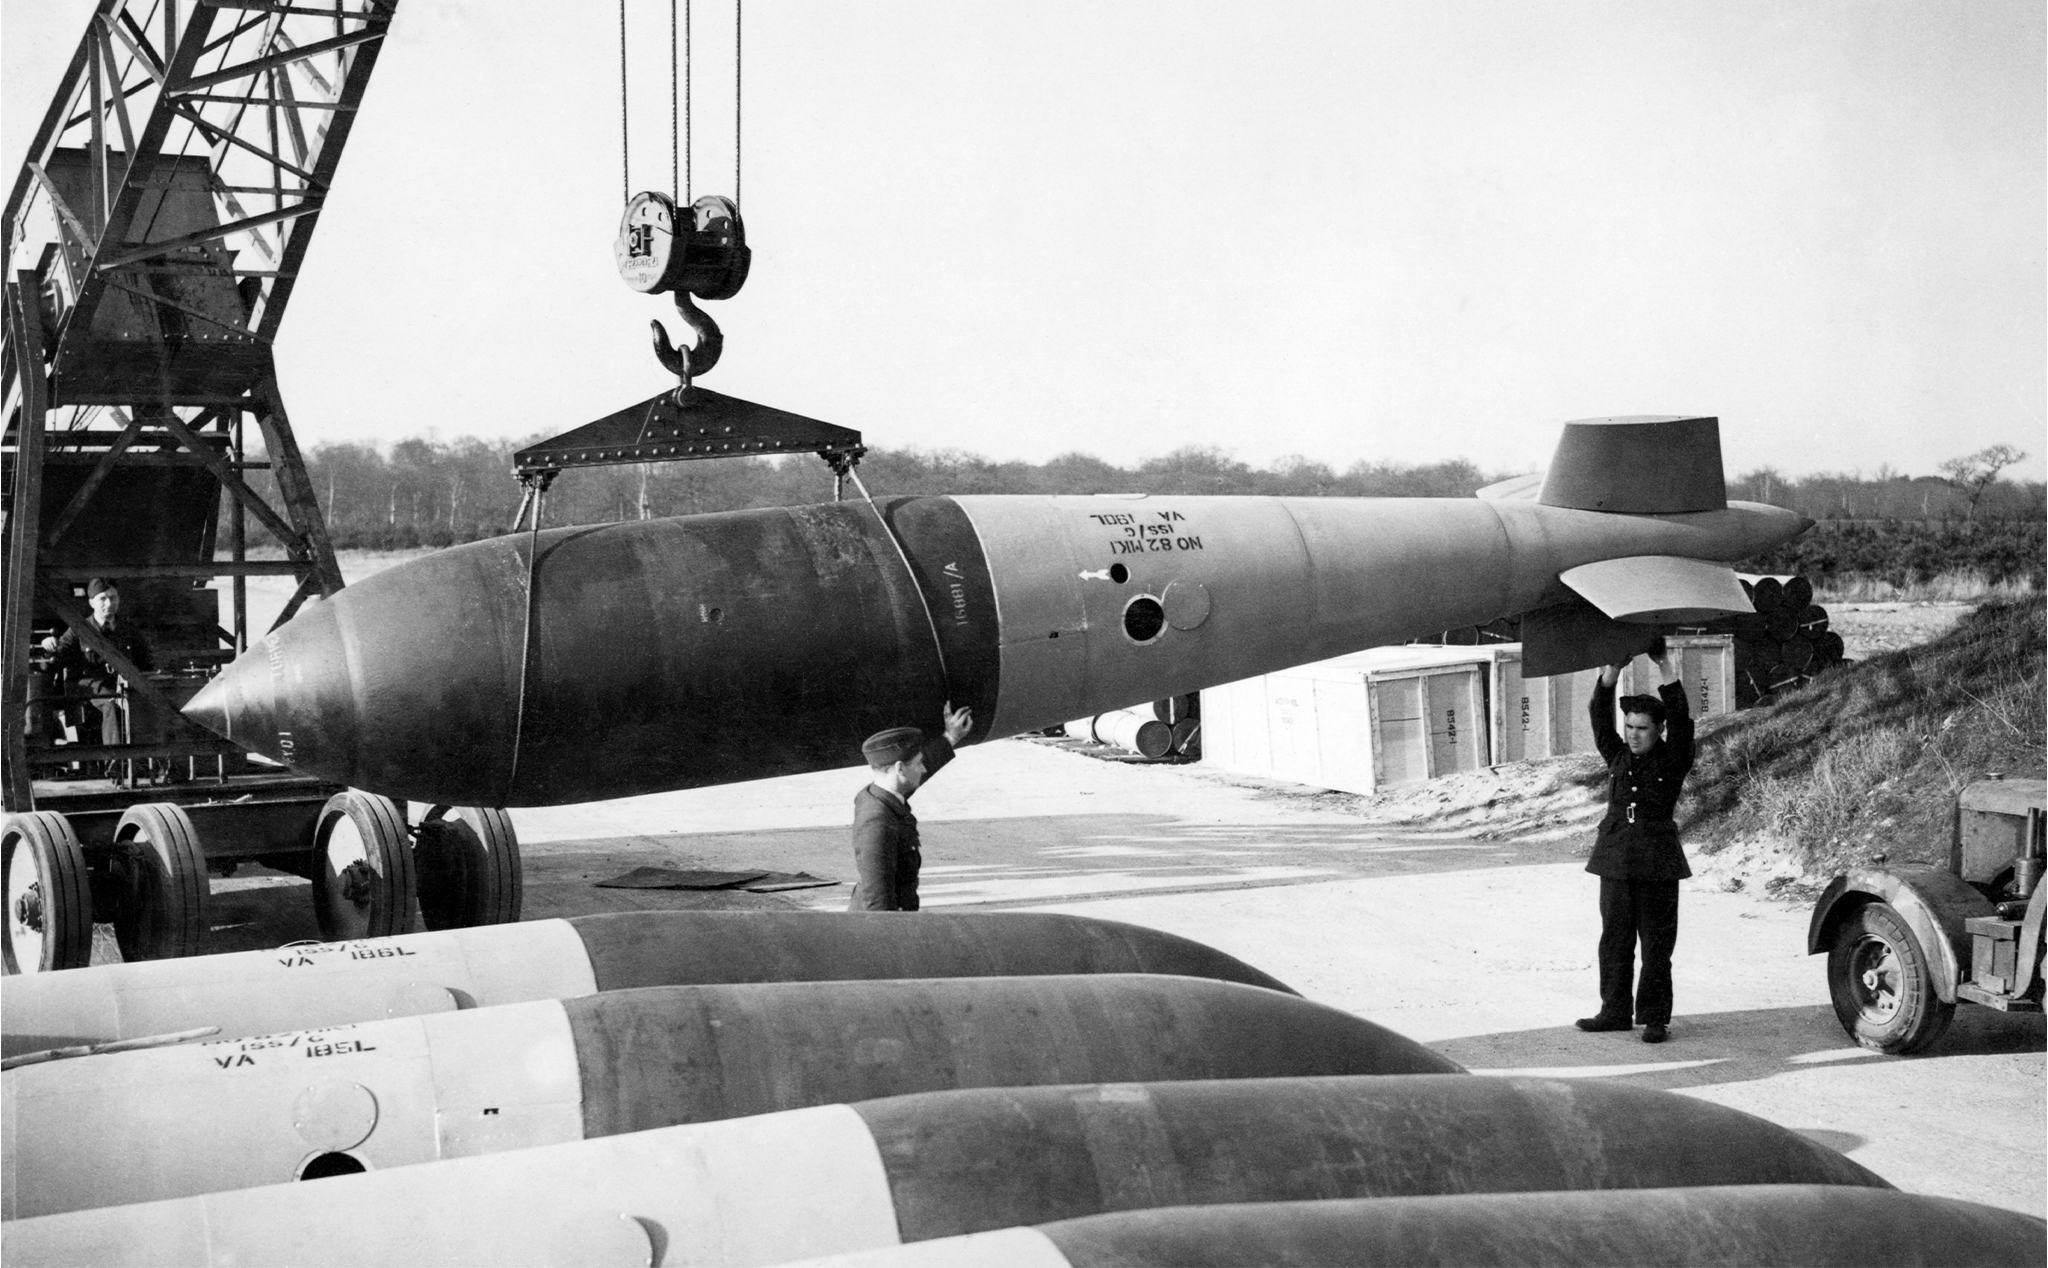 Quân đội Ba Lan vừa tháo gỡ một quả bom 6 tấn "Tallboy" còn sót lại từ thời thế chiến II của Anh